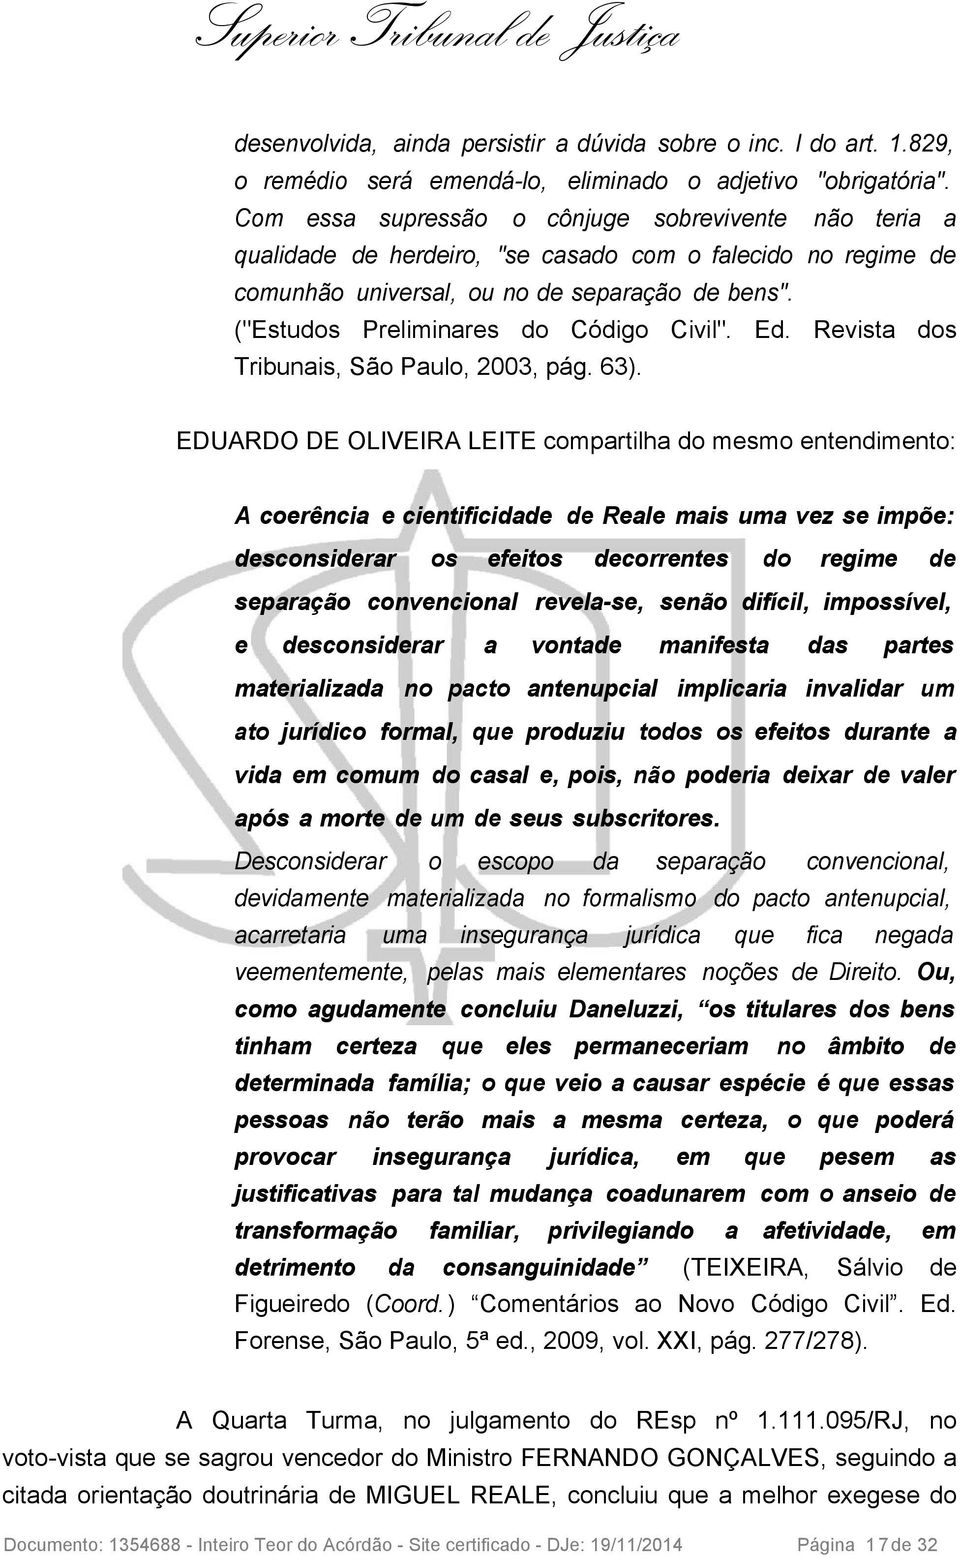 ("Estudos Preliminares do Código Civil". Ed. Revista dos Tribunais, São Paulo, 2003, pág. 63).